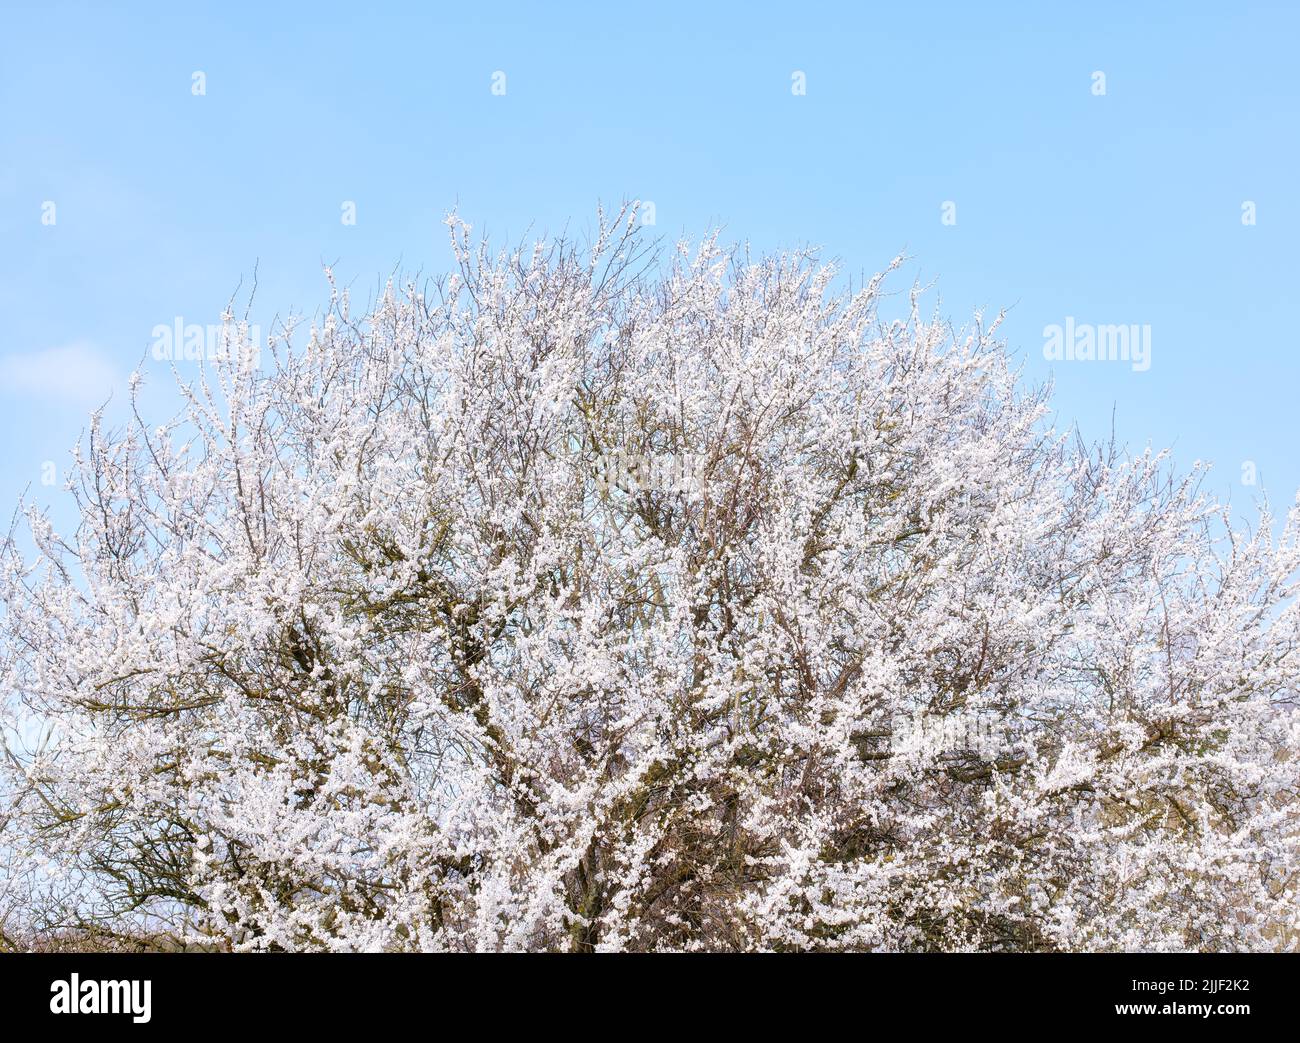 Magnifique arbre avec des fleurs blanches poussant sur une cerise ou un pommier à l'extérieur dans un verger de fruits. Fleurs de printemps fraîches délicates isolées contre un bleu Banque D'Images